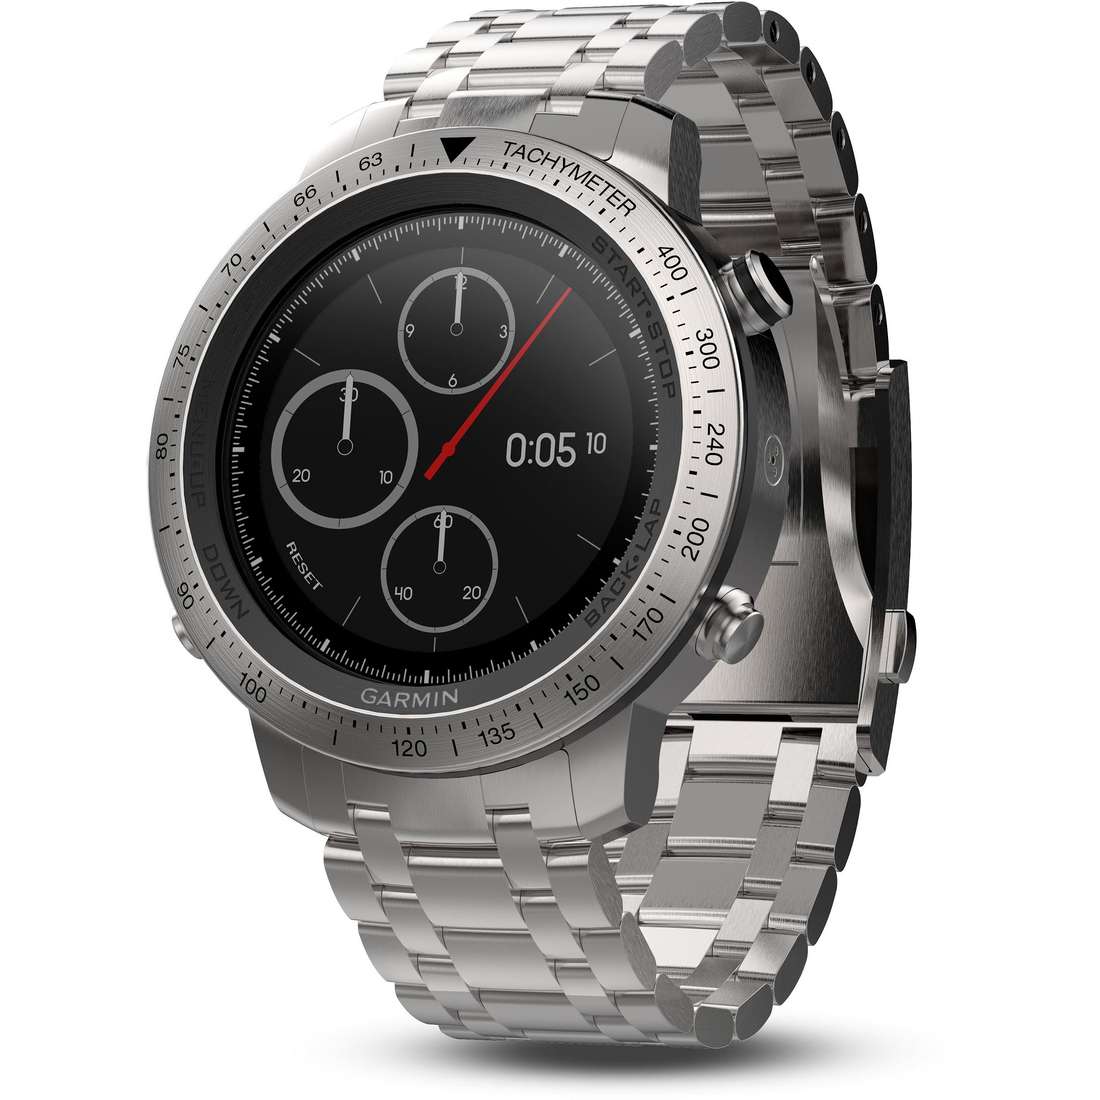 Smartwatch Garmin Fenix orologio uomo 010-01957-02